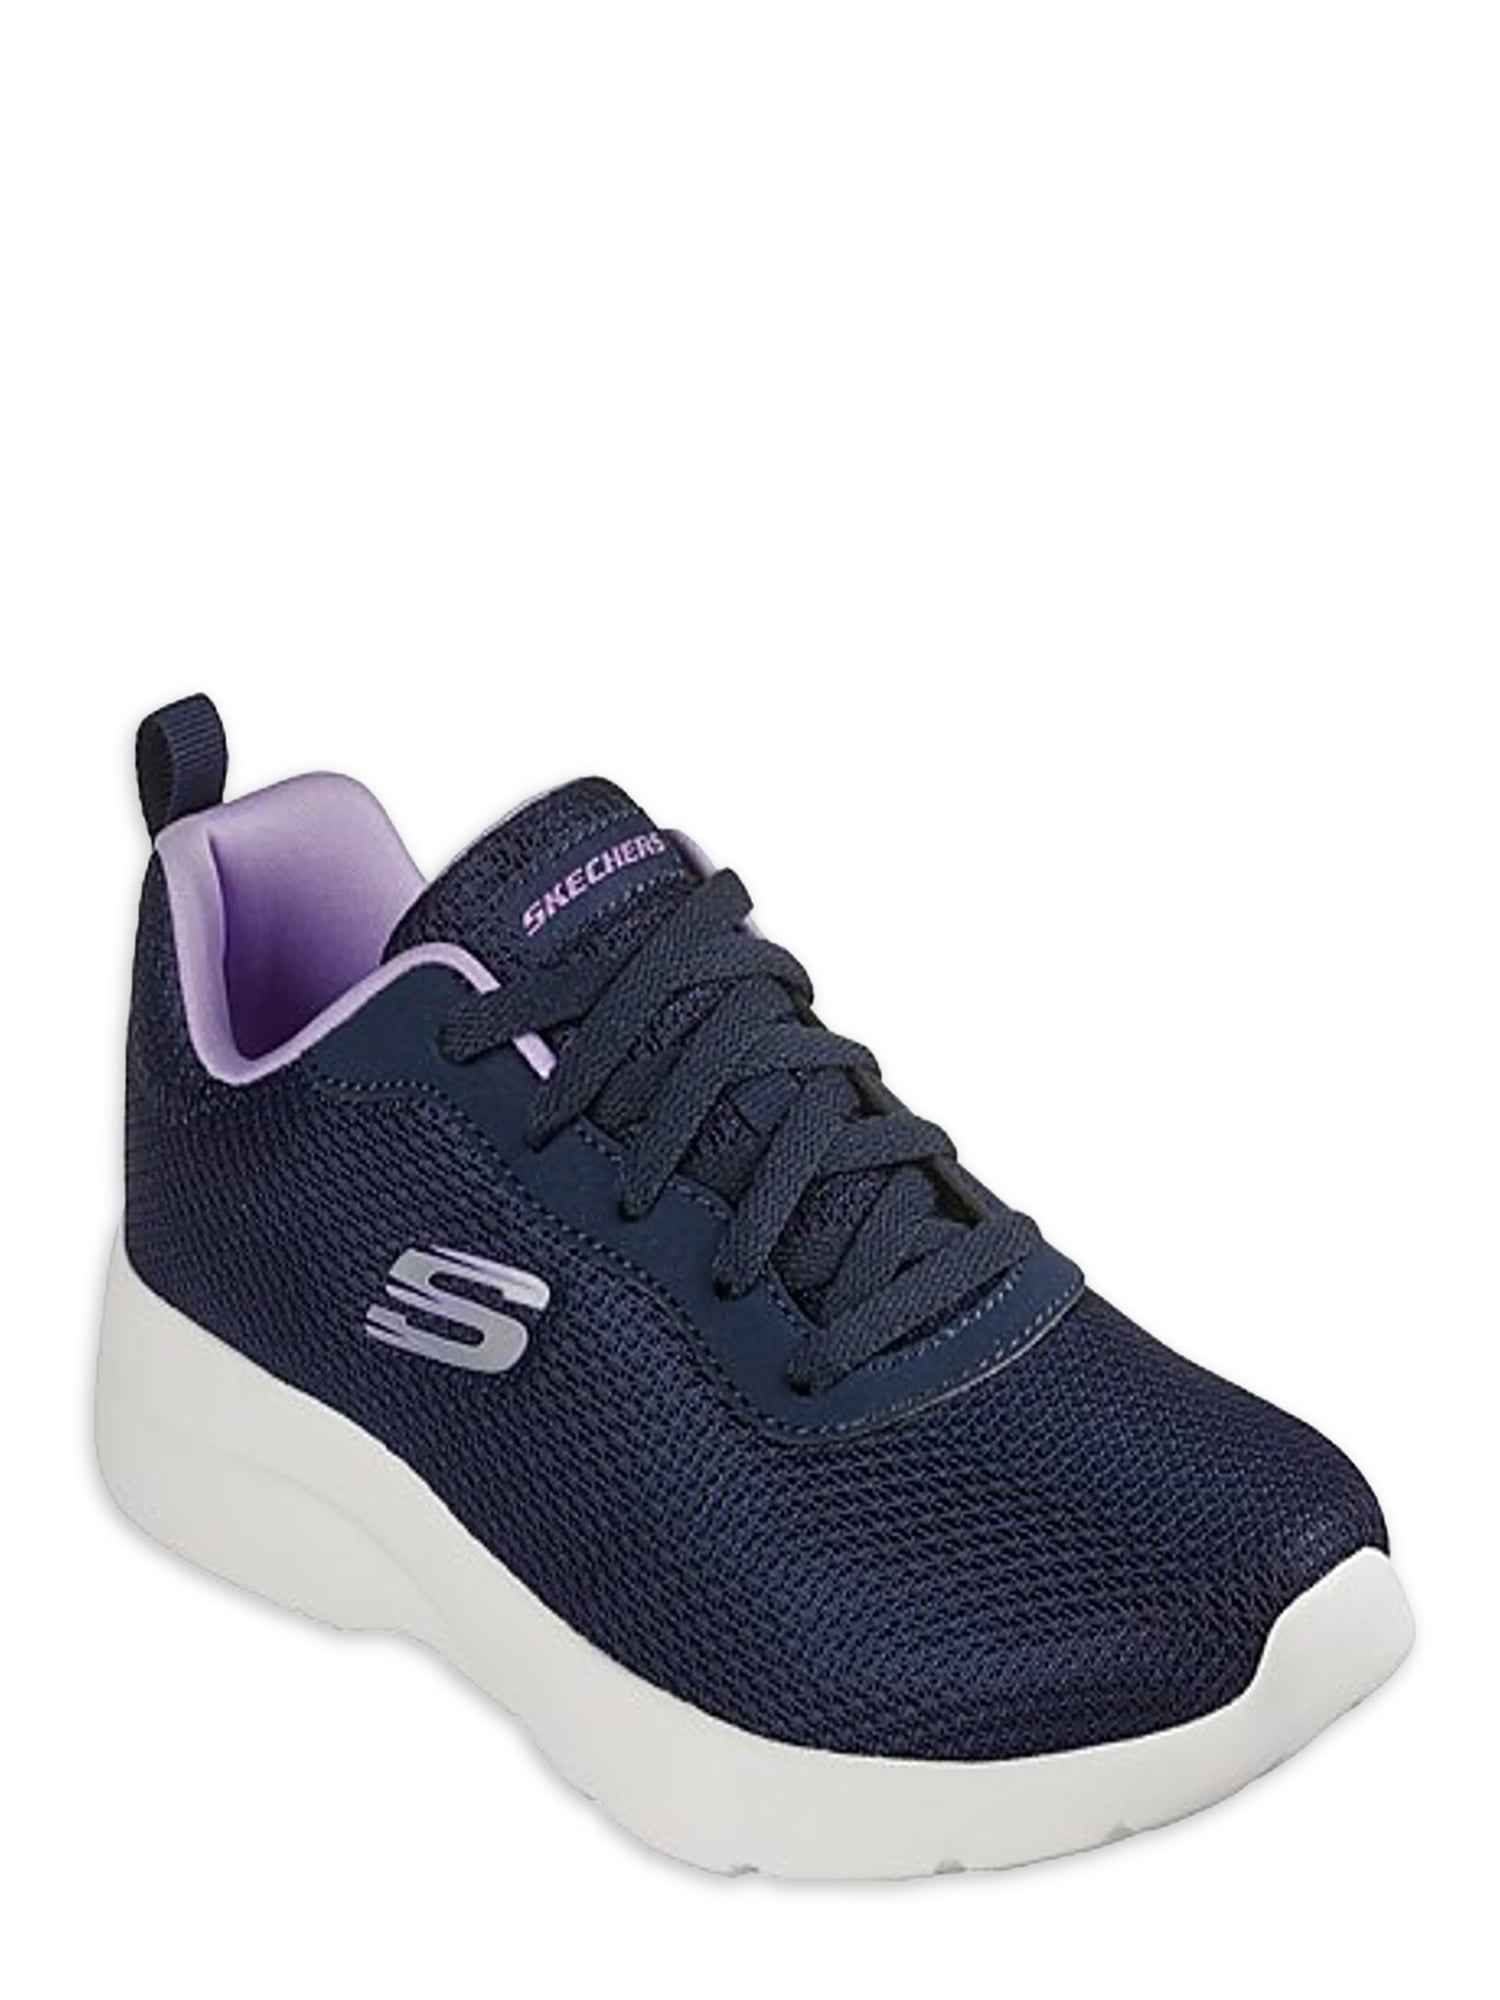 Buy Skechers Men Woven Design FLEX ADVANTAGE 3.0 MORWICK Slip On Sneakers -  Casual Shoes for Men 8886073 | Myntra